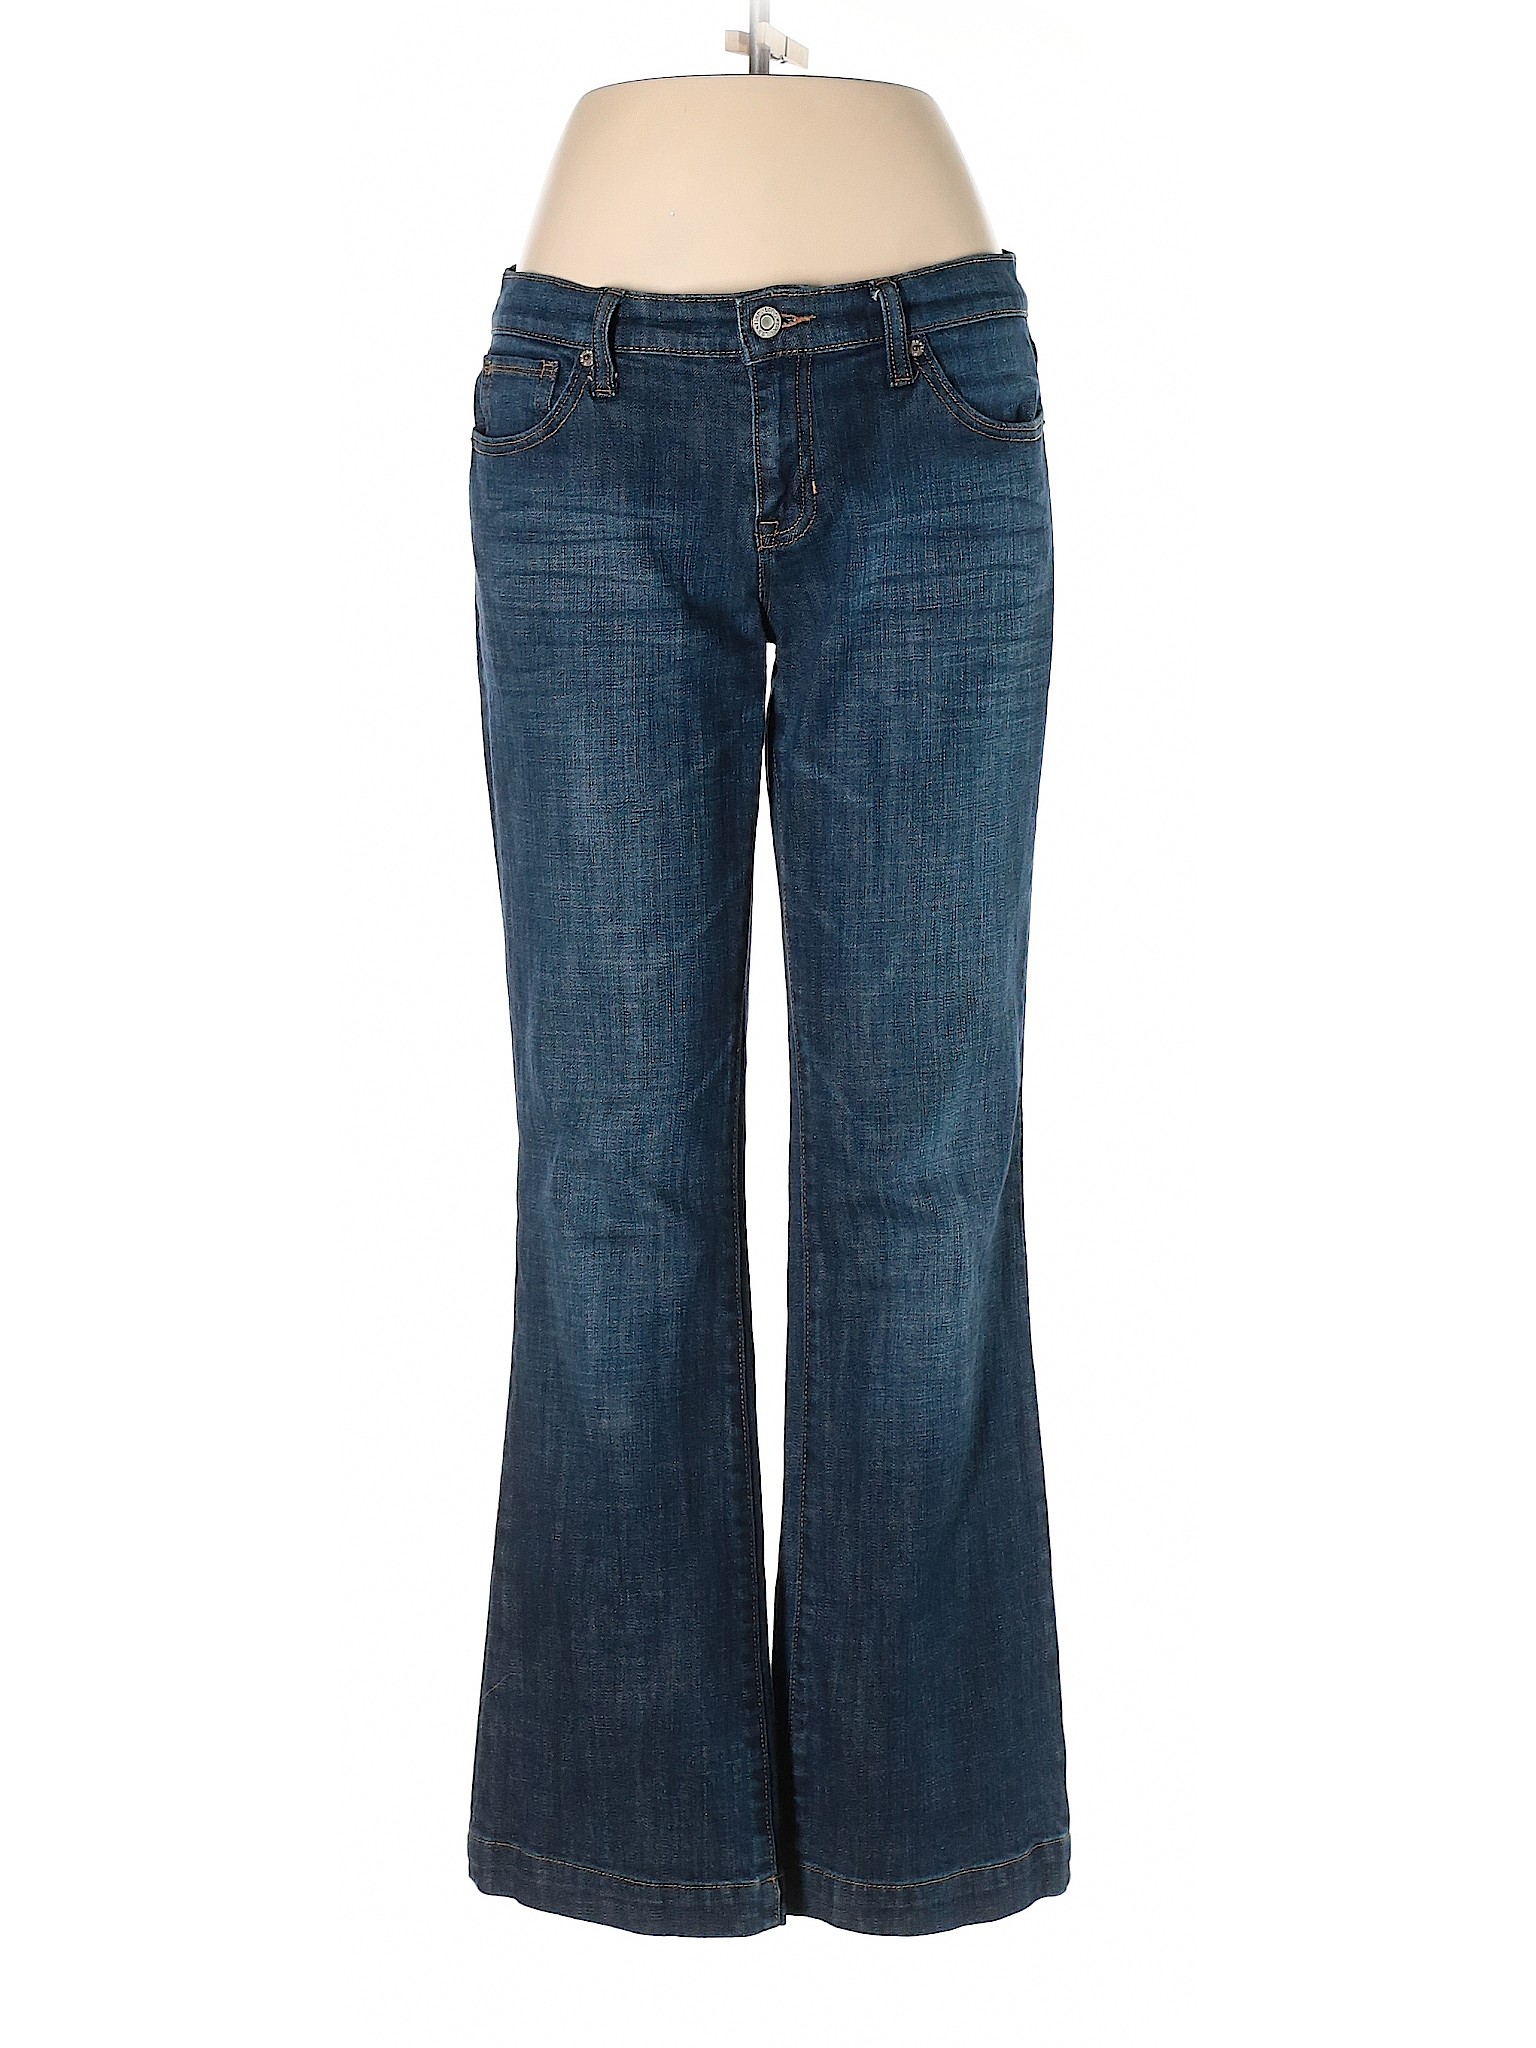 Gap Women Blue Jeans 6 | eBay